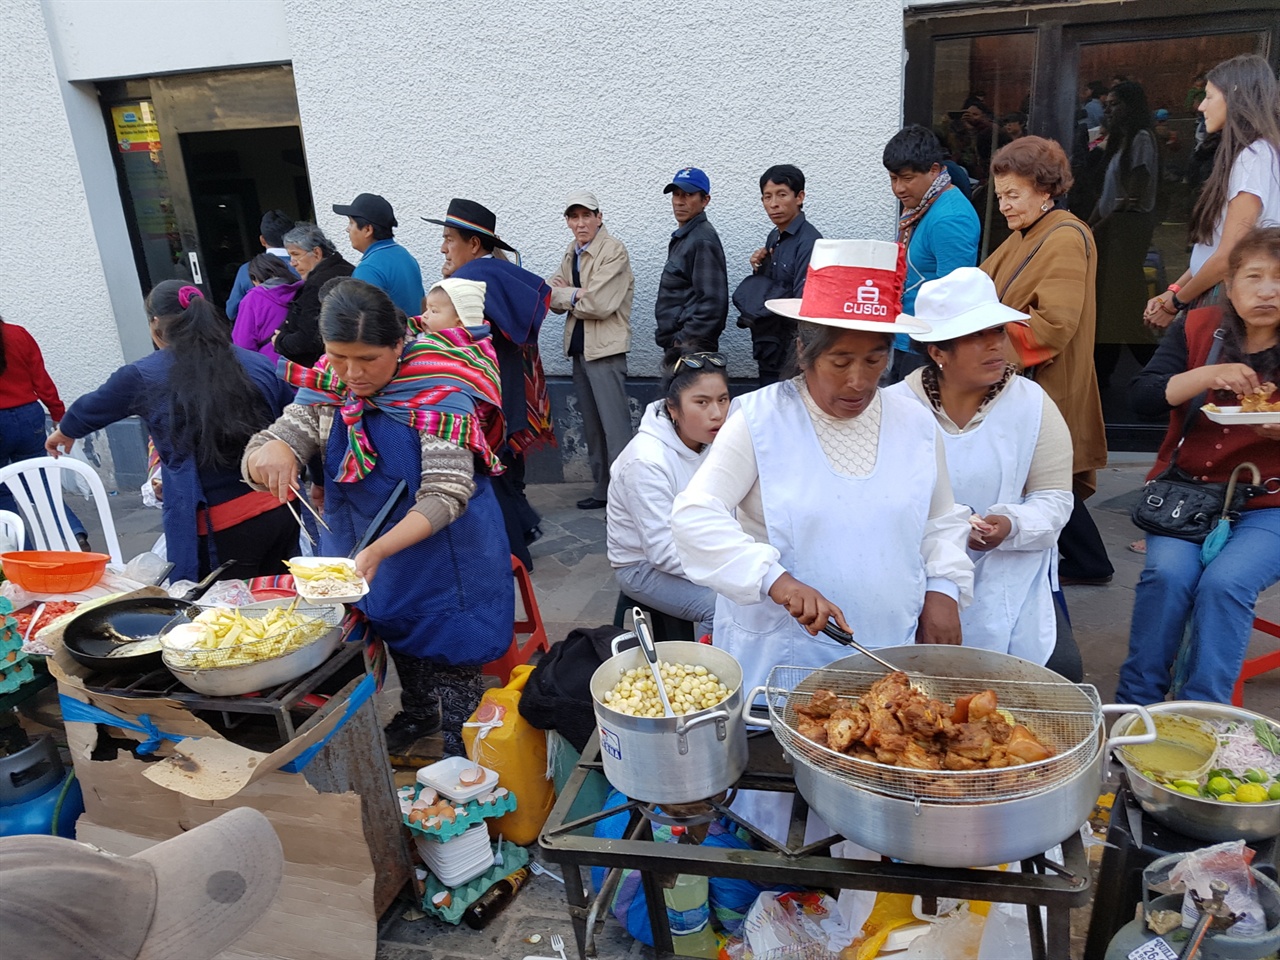 잉카 원주민의 전통의상을 입은 잉카 후예들이 미국, 유럽관광객들을 상대로 거리음식도 팔고 각종 공예품도 판다. 주로 쿠스크 인근에서 많이 생산되는 옥수수, 감자, 돼지고기, 닭고기 튀김 등과 페루식 막걸리인 ‘치차’와 잉카맥주를 판다.